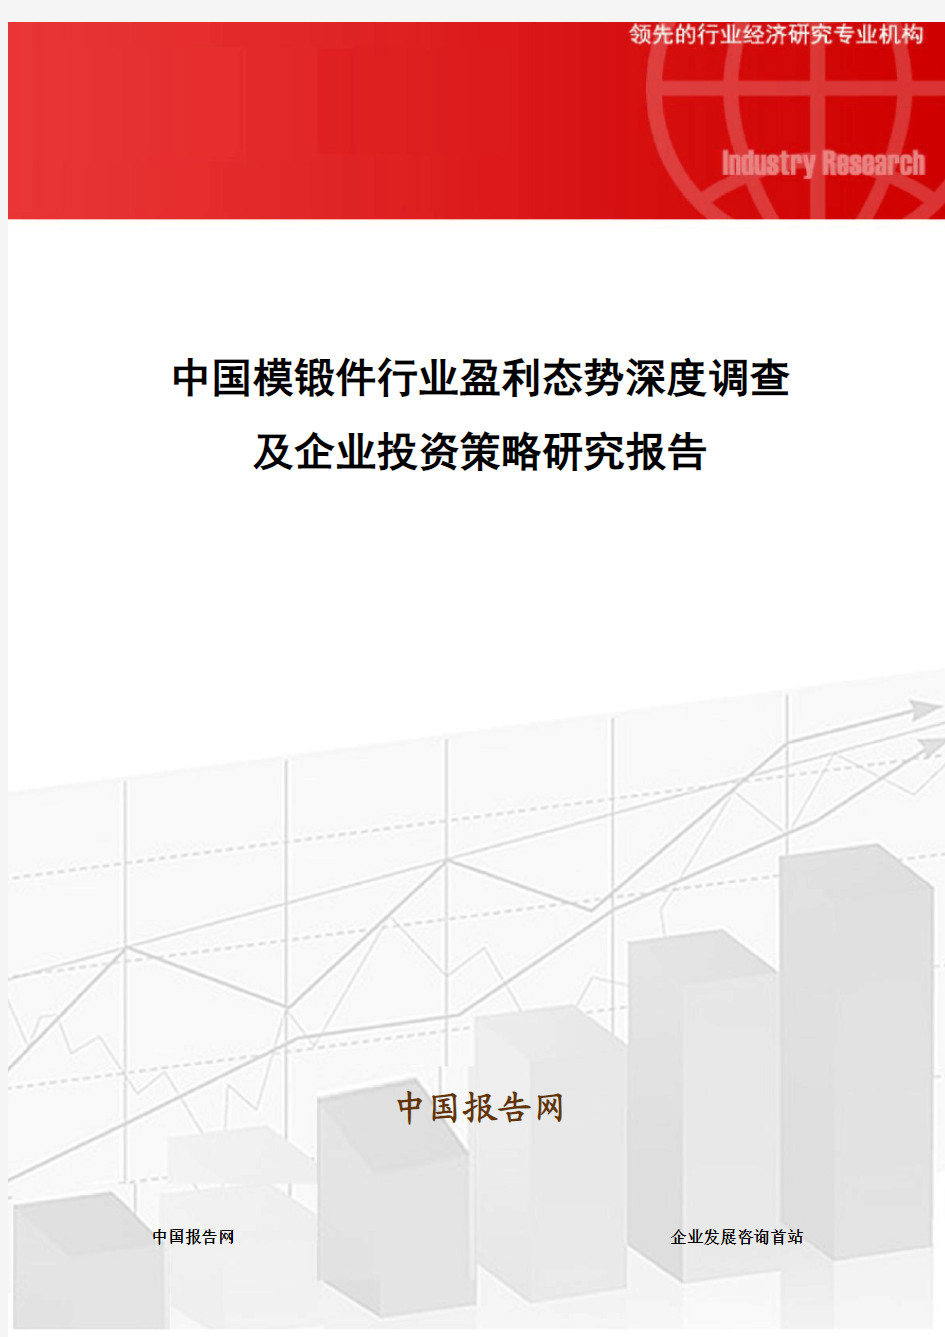 中国模锻件行业盈利态势深度调查及企业投资策略研究报告